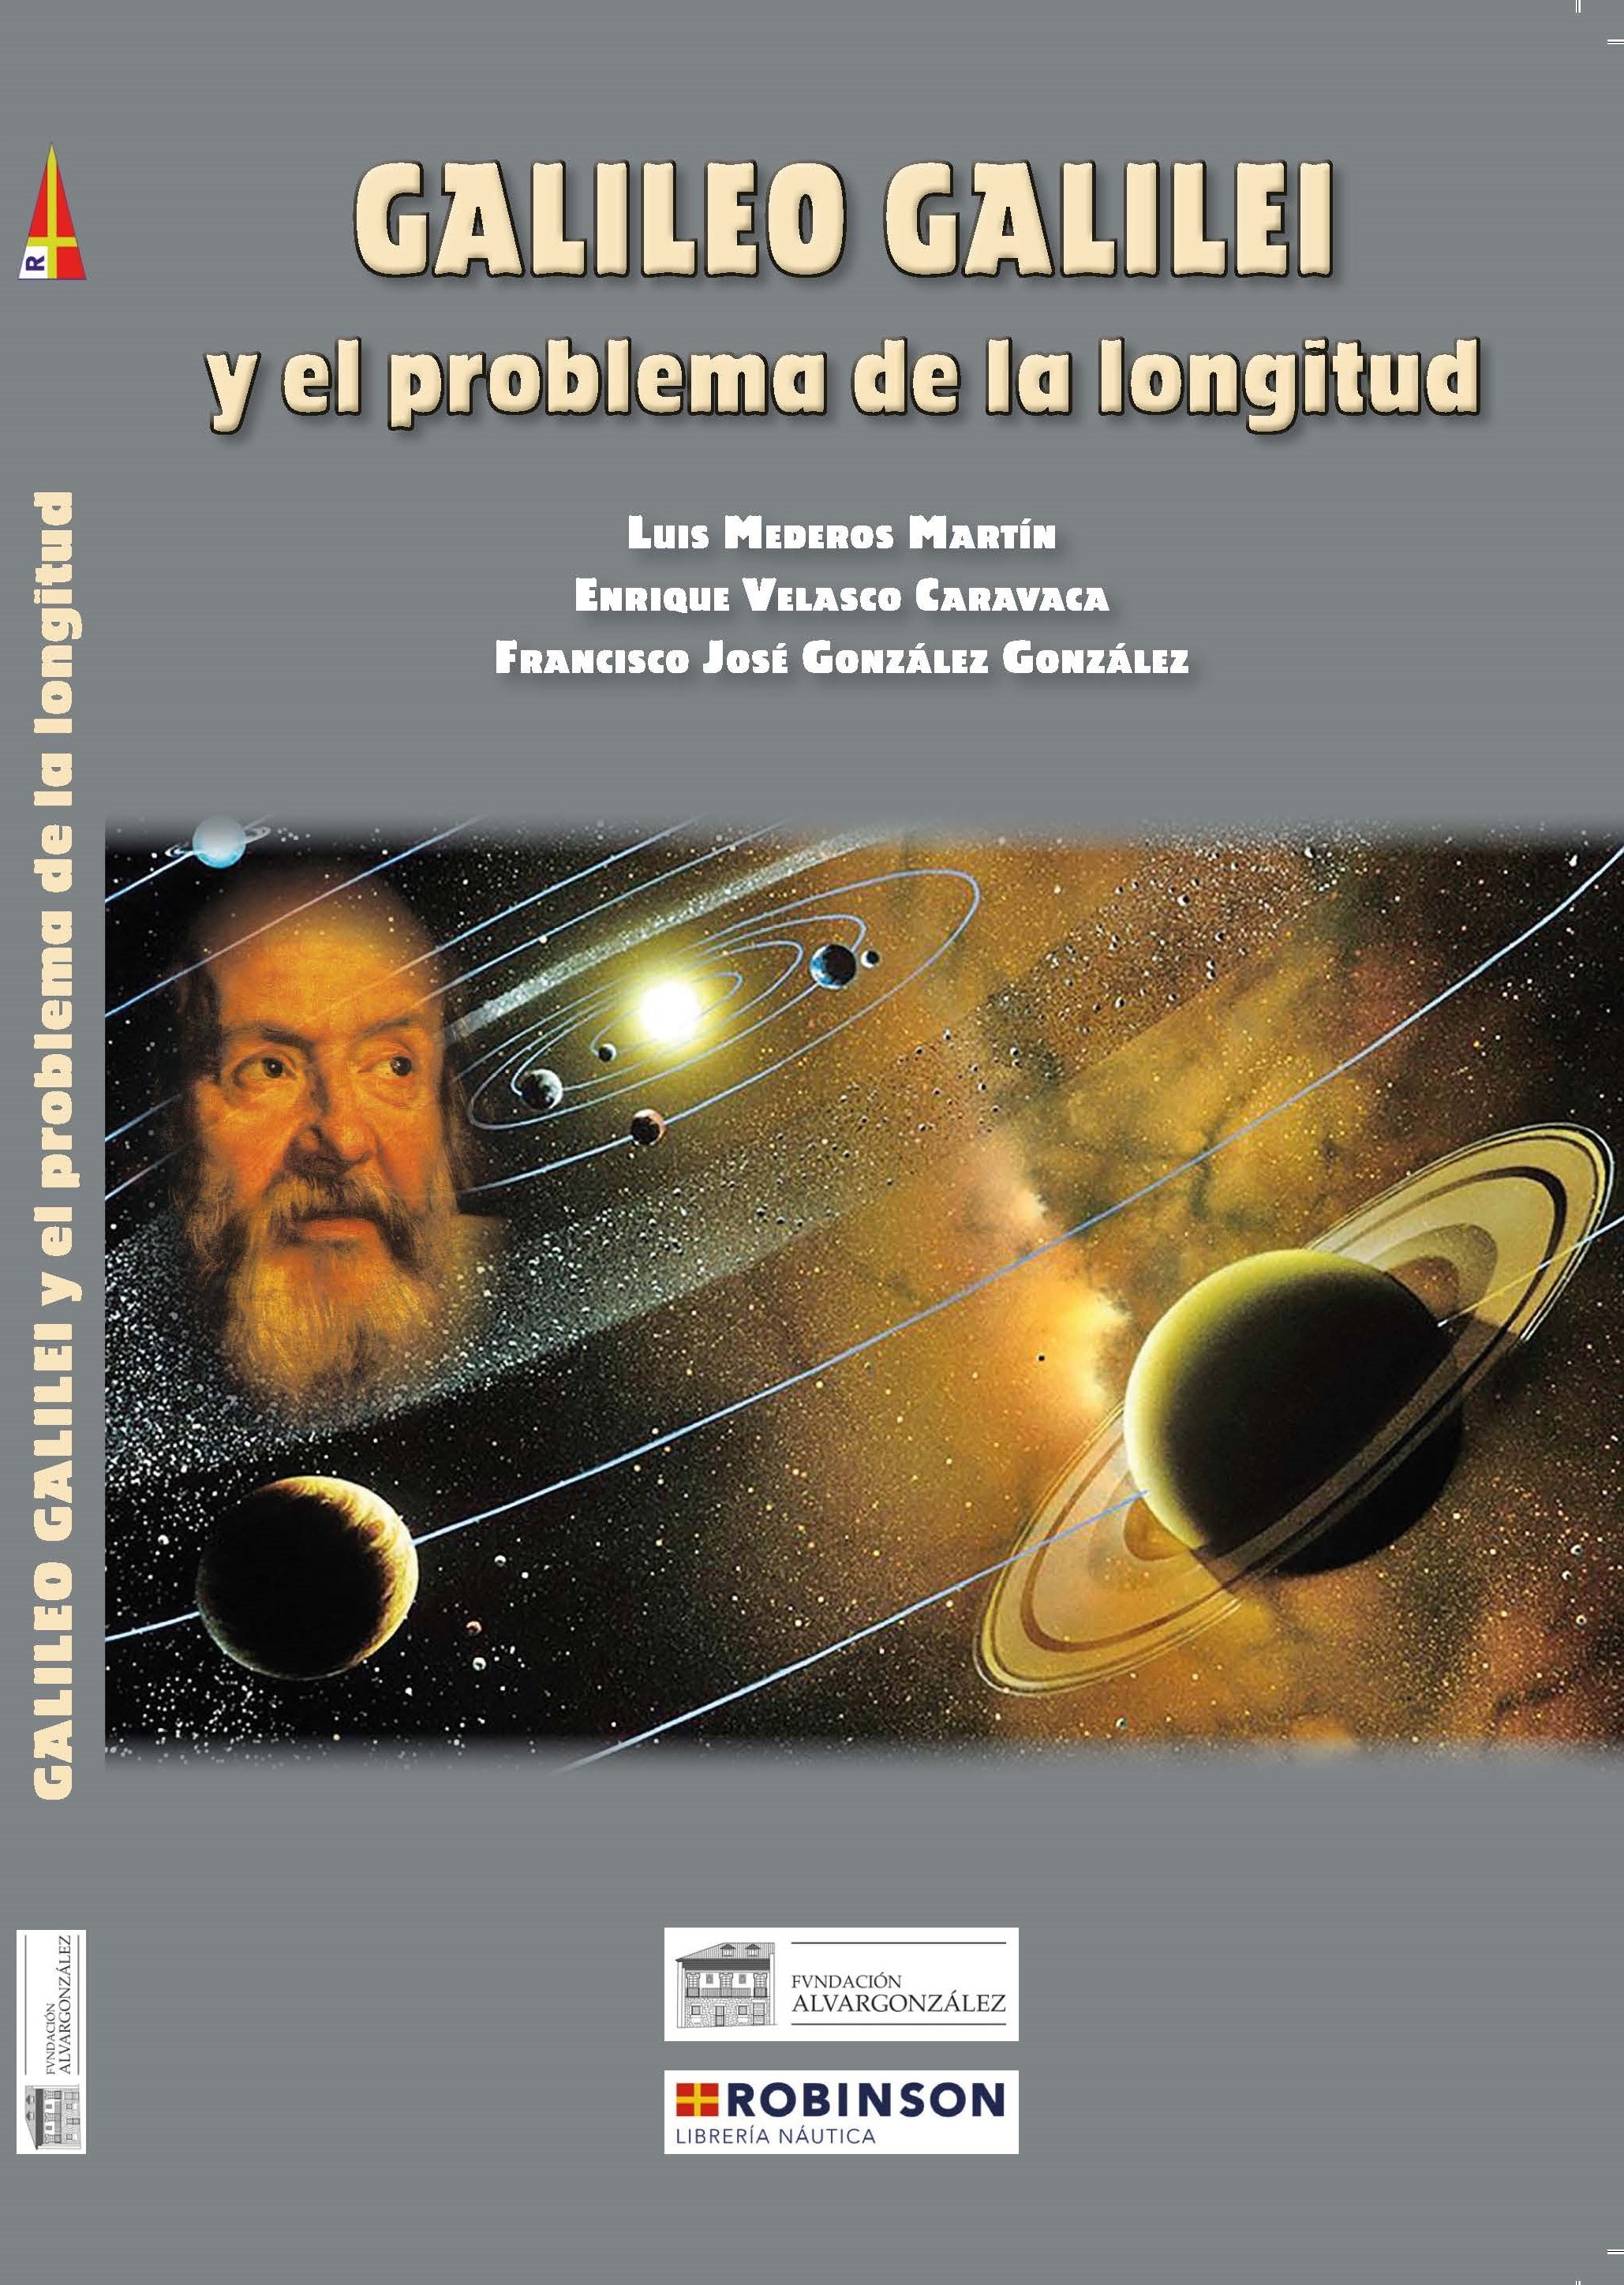 Galileo Galilei y el problema de la longitud